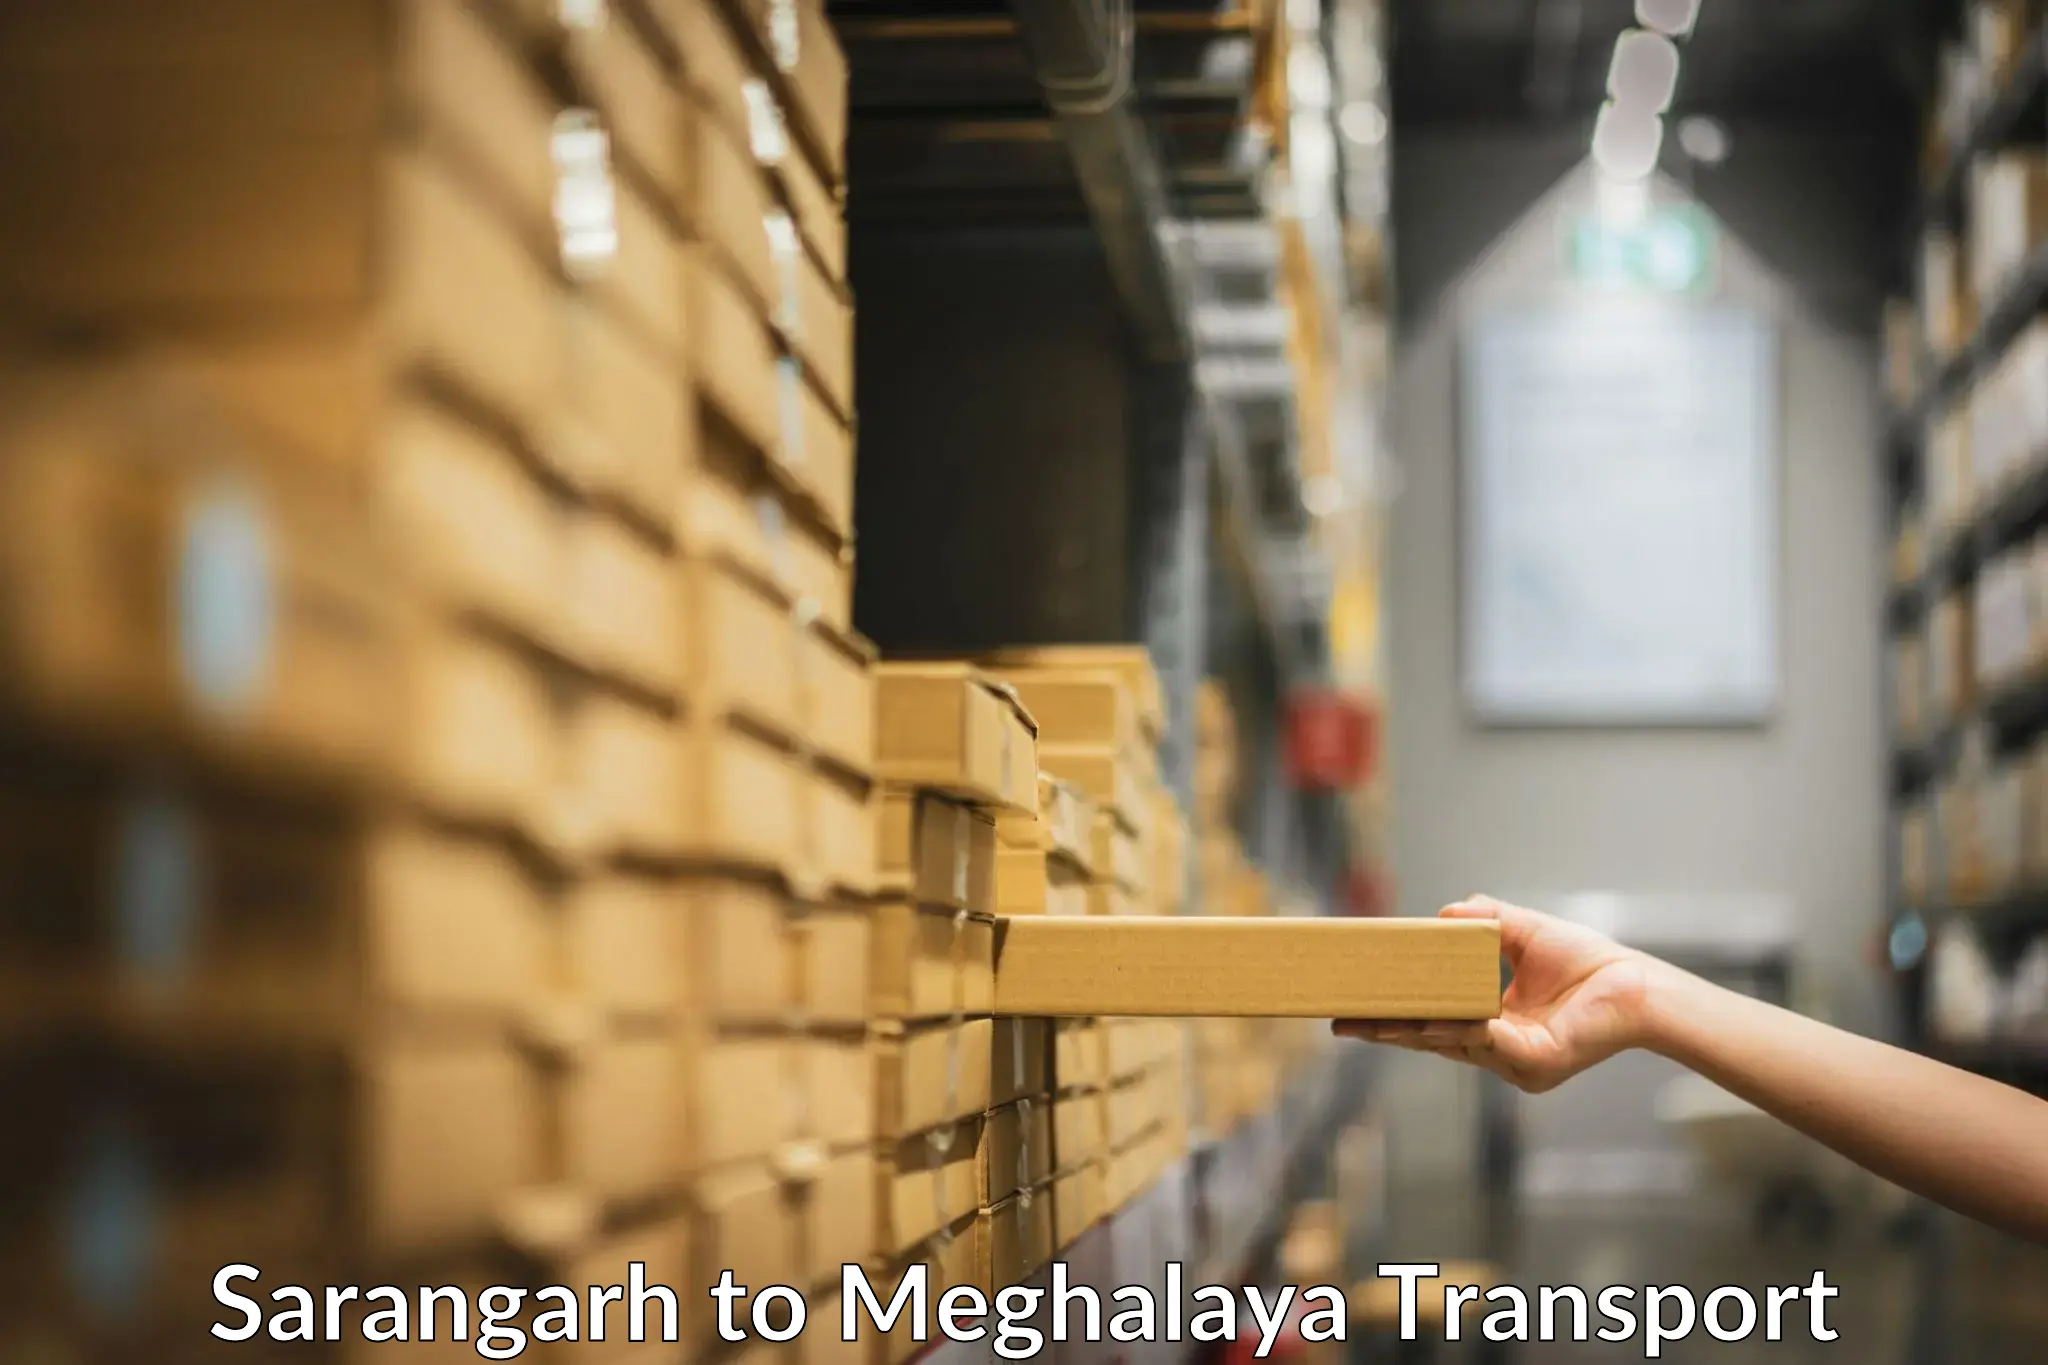 Shipping partner Sarangarh to Meghalaya